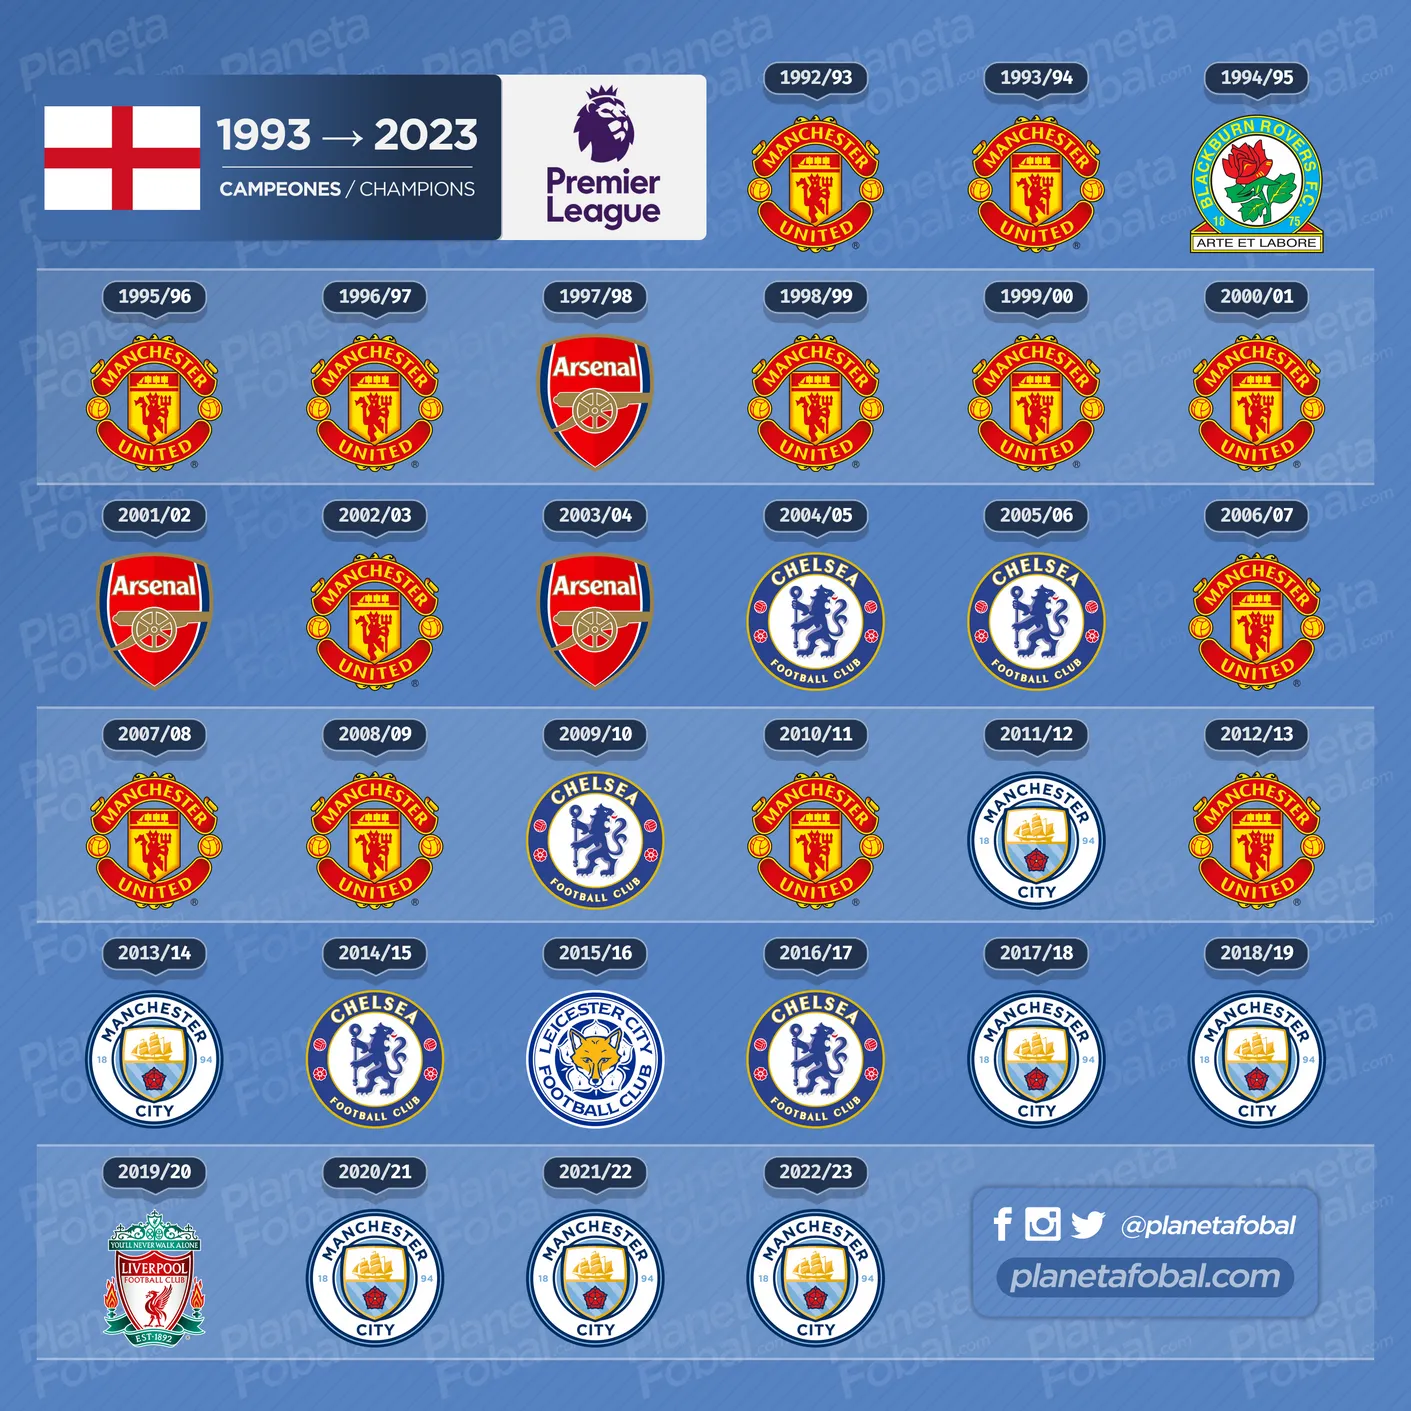 Campeones de la Premier League (1993 → 2023)